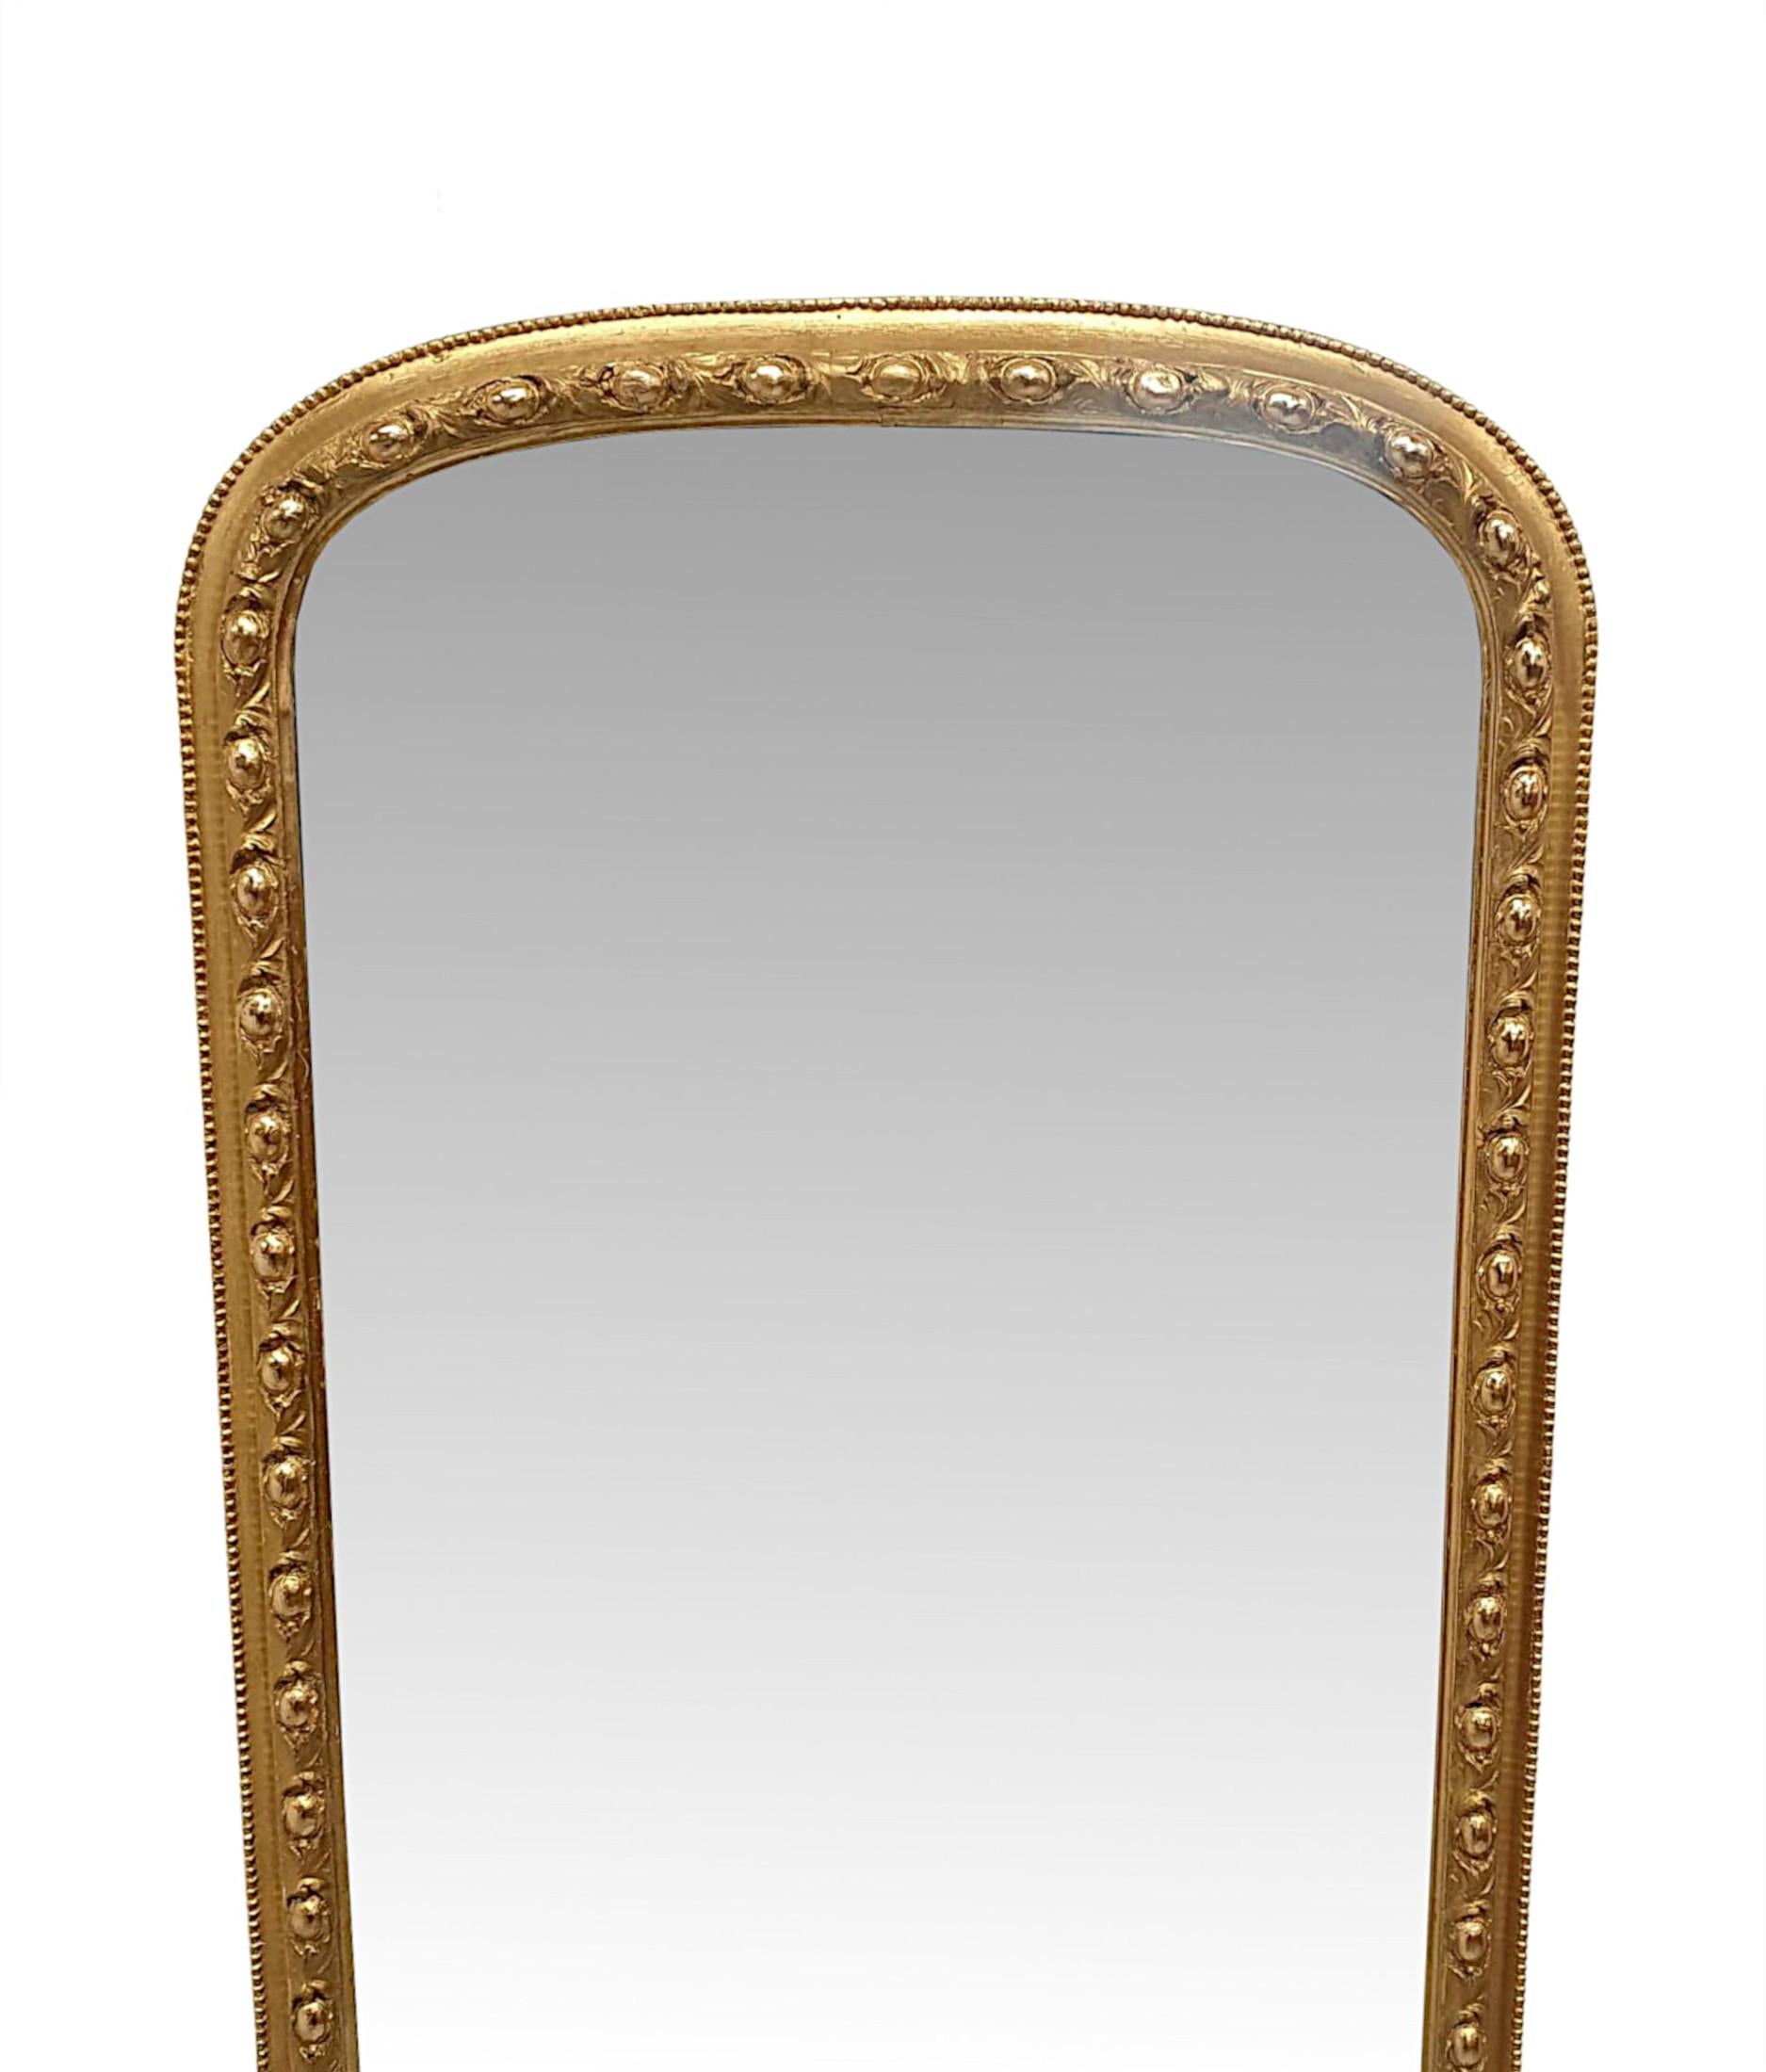 Ein sehr seltener und feiner Spiegel aus vergoldetem Holz des 19. Jahrhunderts, von außergewöhnlicher Qualität und sowohl hohen als auch schmalen Proportionen.  Der Spiegel Glasplatte ist in einem fein von Hand geschnitzten Rahmen aus vergoldetem